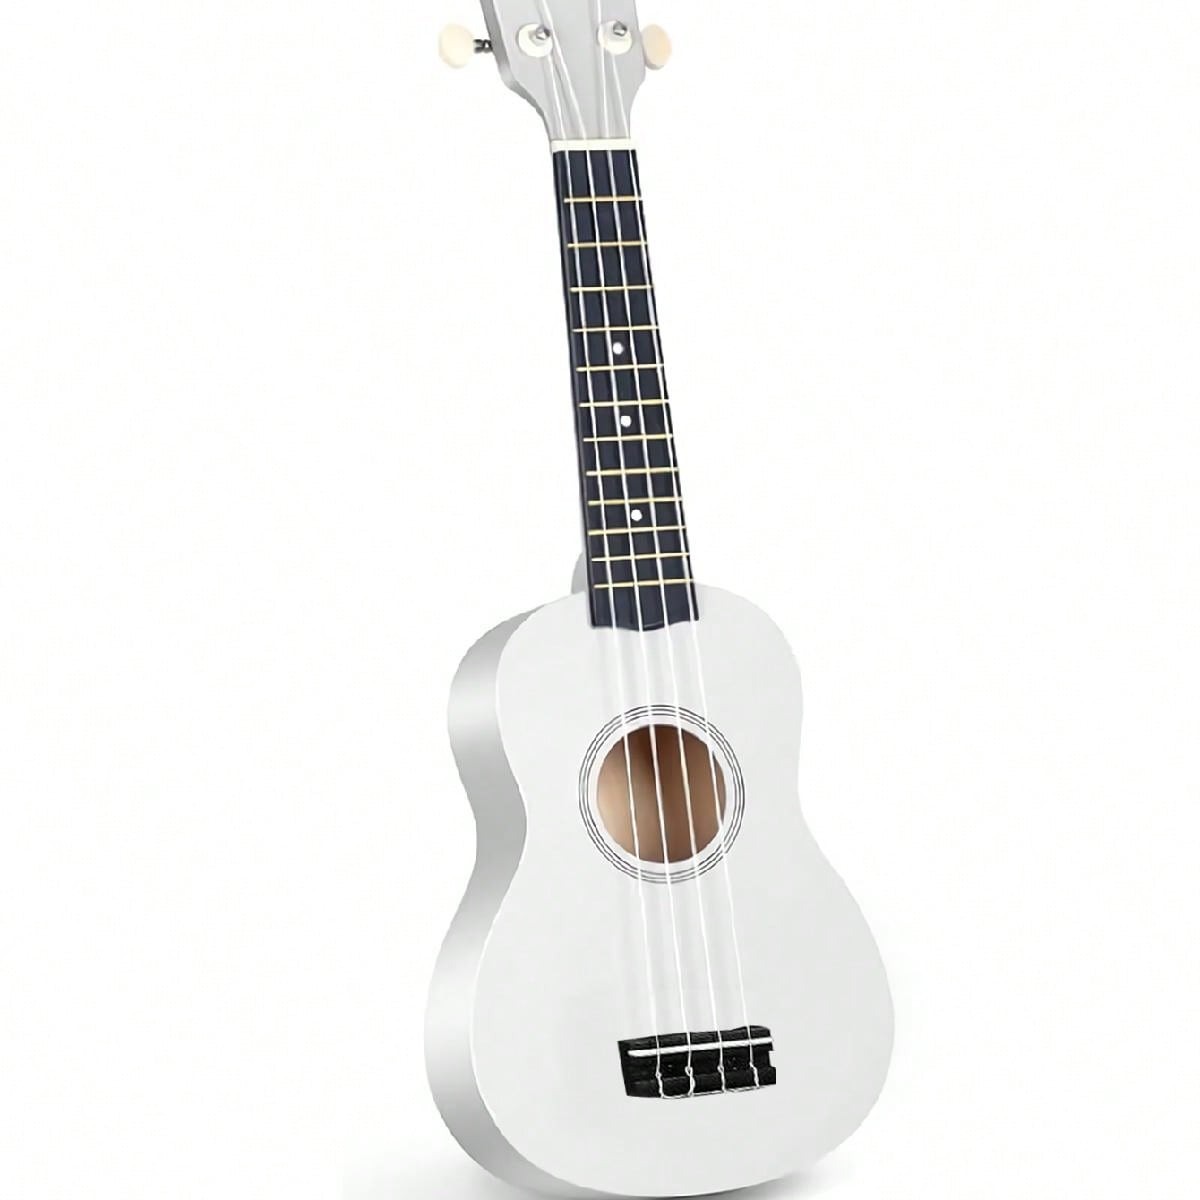 SHEIN 1 Pc Wood Guitar 21 Inch Ukulele Instrument StarterTrendy Soprano Ukulele For Beginners Hawaiian Ukulele As A Gift White one-size